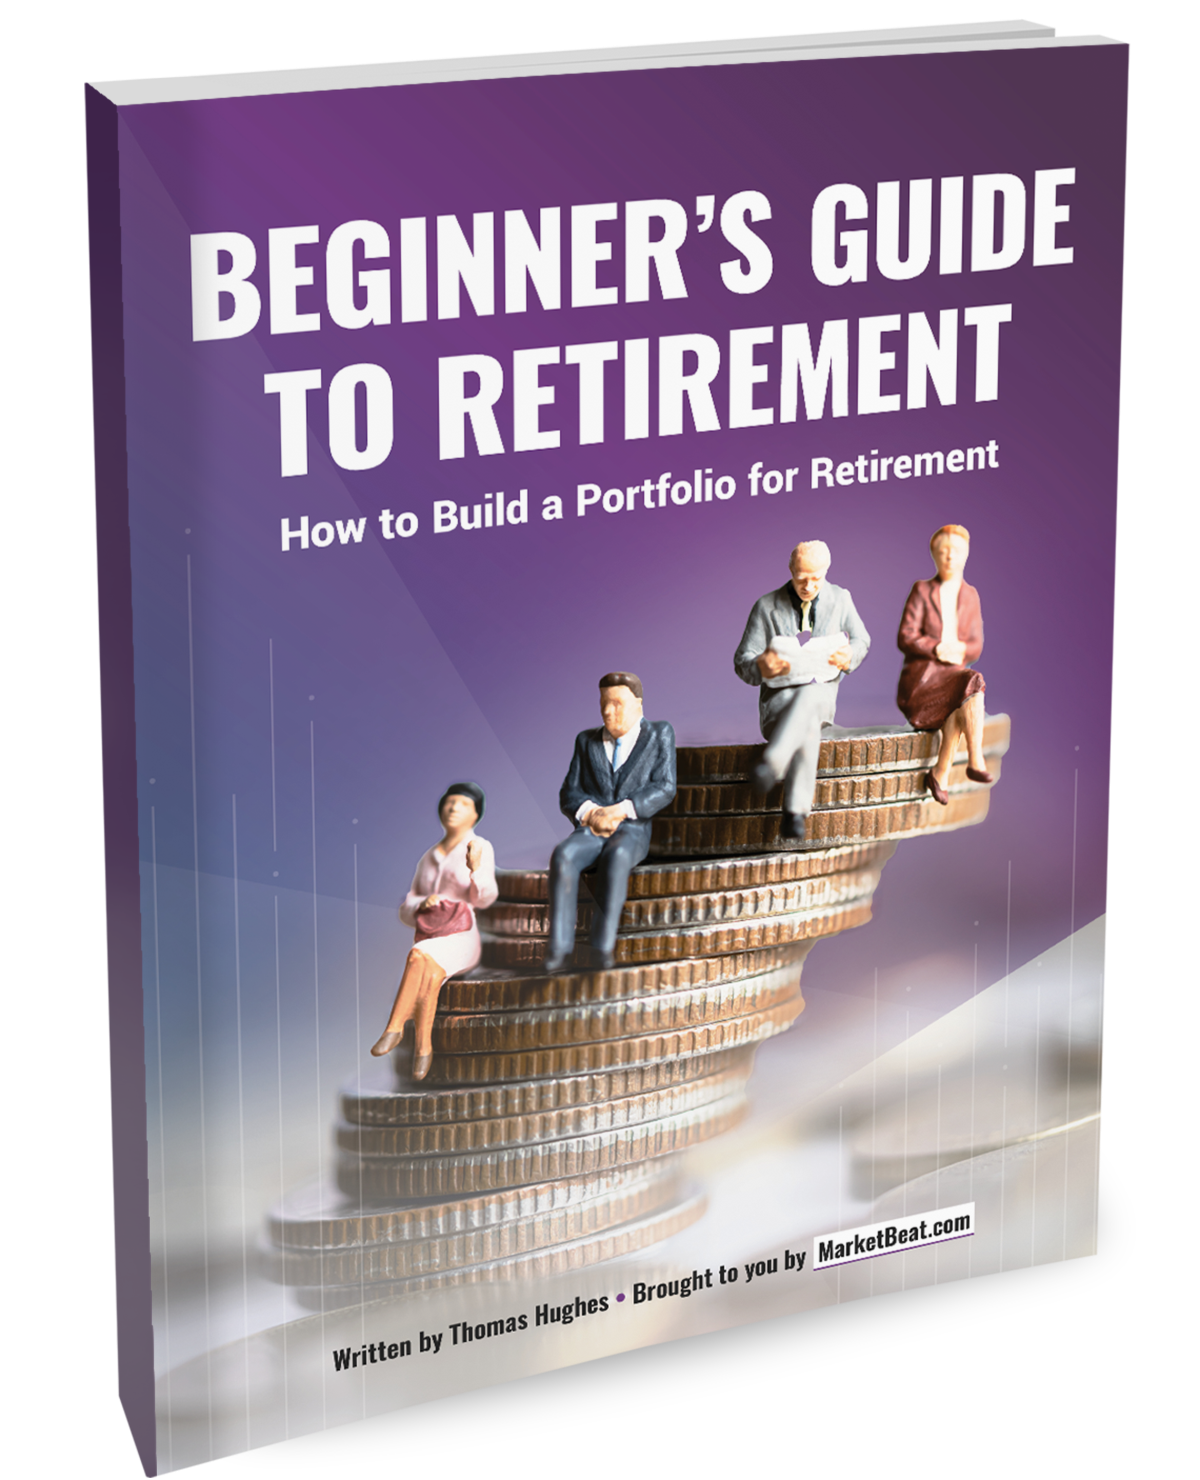 Una guía para principiantes para cubrir los saldos de jubilación